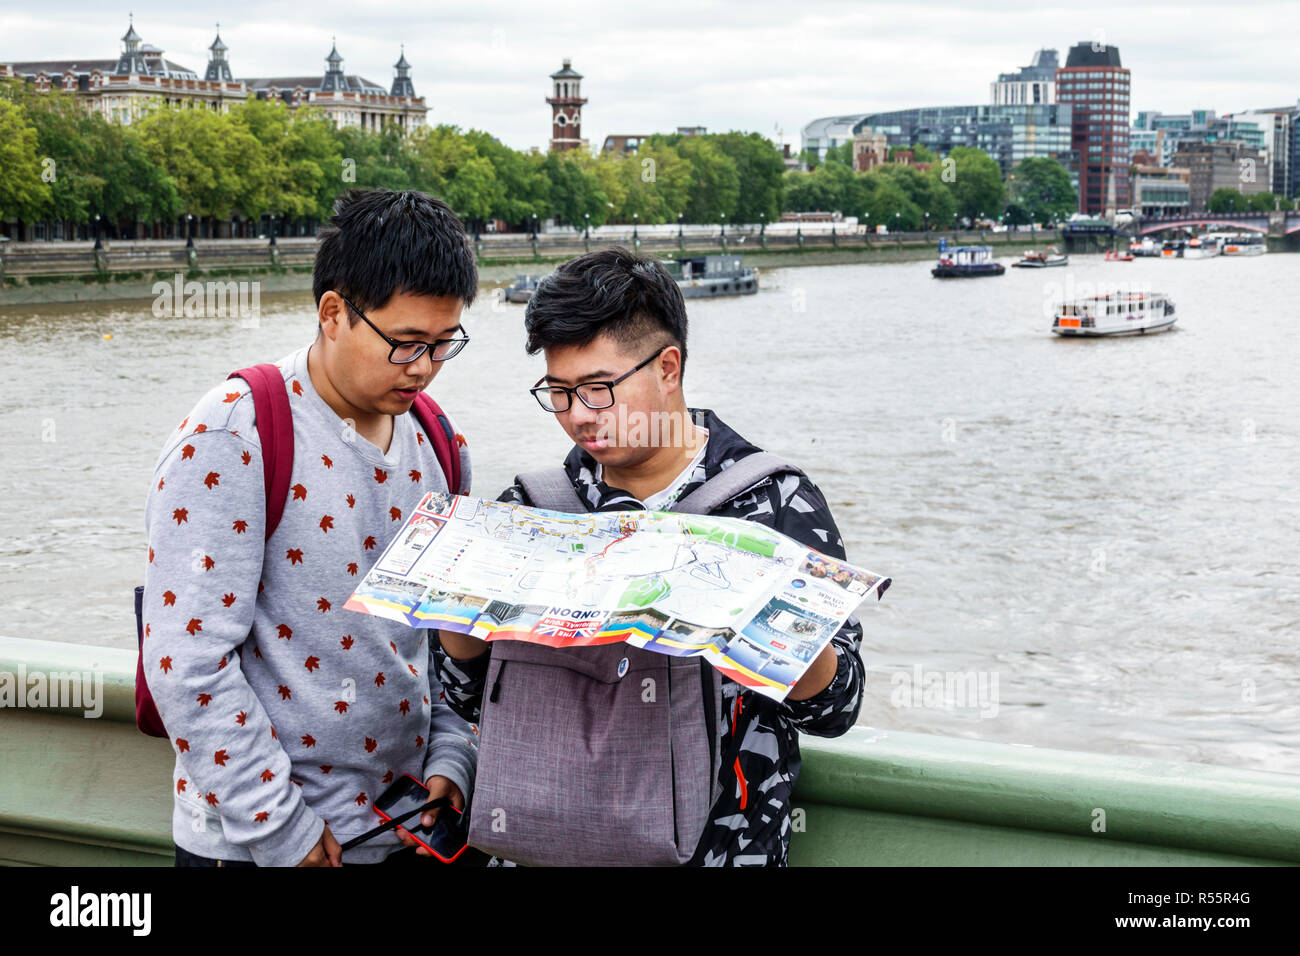 Londra Inghilterra,Regno Unito,Ponte di Westminster,Tamigi River,uomo asiatico maschio,ragazzo ragazzi,bambini bambini bambini bambini bambini ragazzi,ragazzi adolescenti ragazzi ragazzi ragazzi lettura Foto Stock